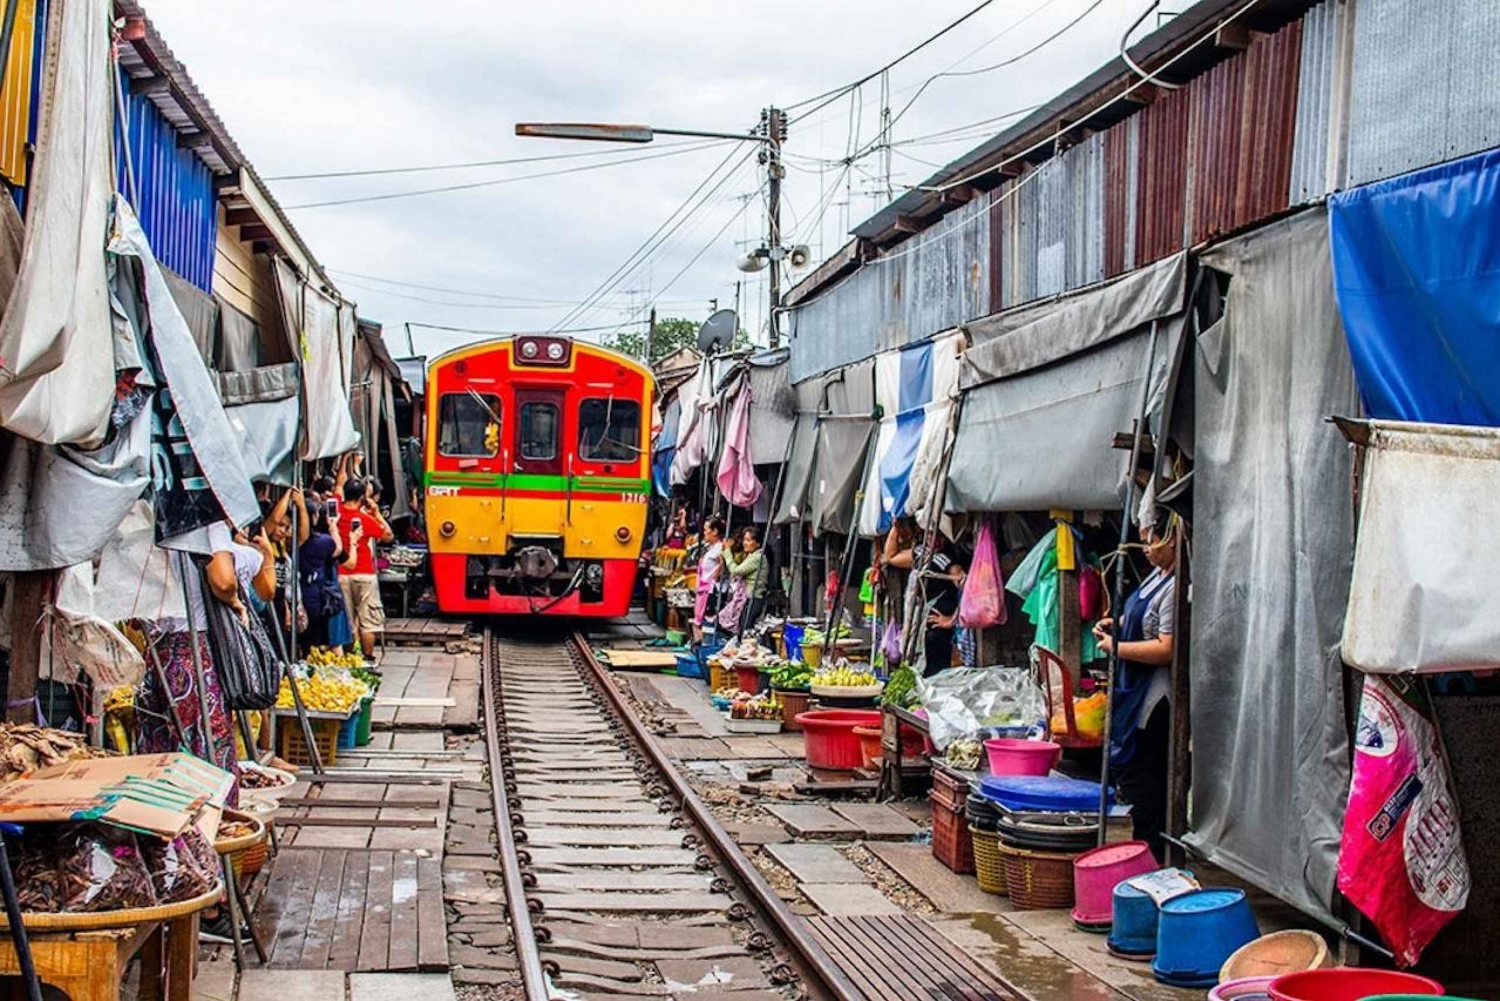 L'incredibile mercato galleggiante e il mercato ferroviario di Damnoen Saduak